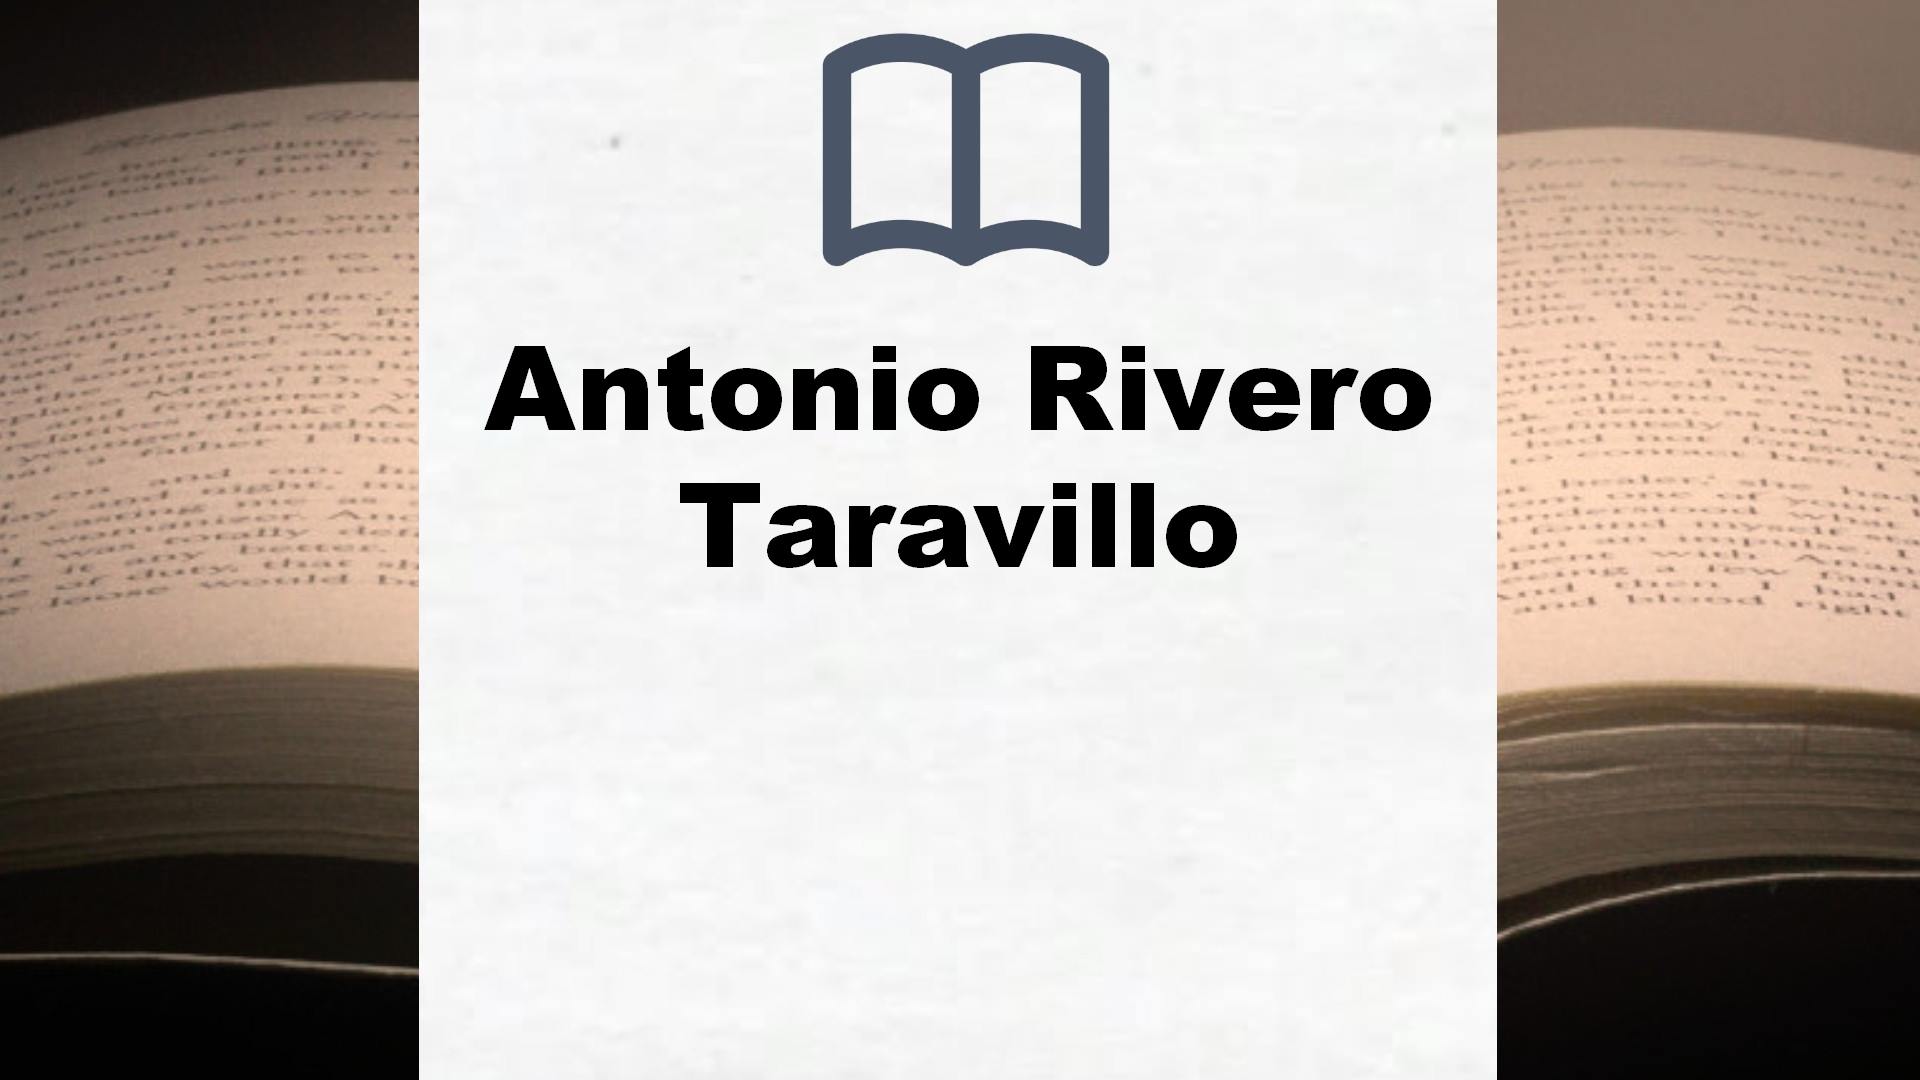 Libros Antonio Rivero Taravillo